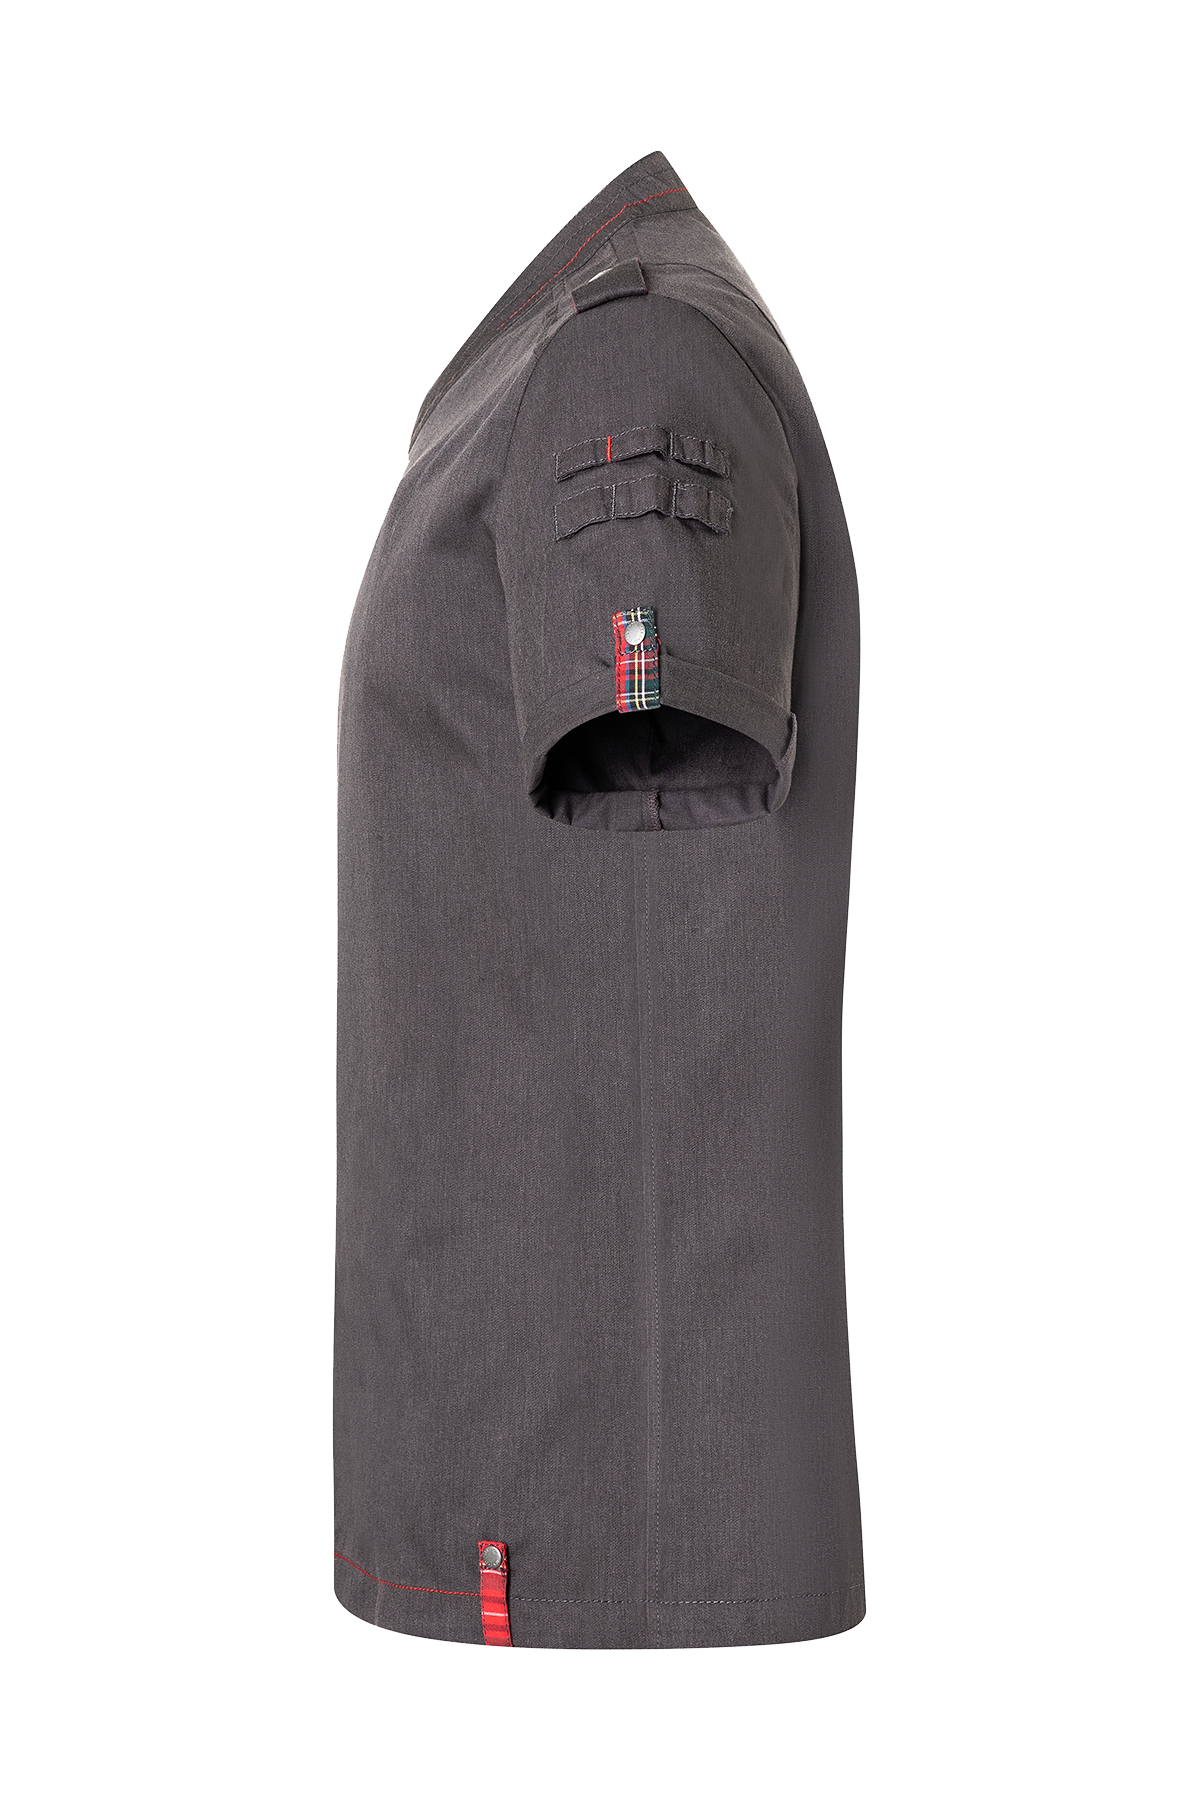 Short-Sleeve Men's Chef Jacket Denim - ROCK CHEF®